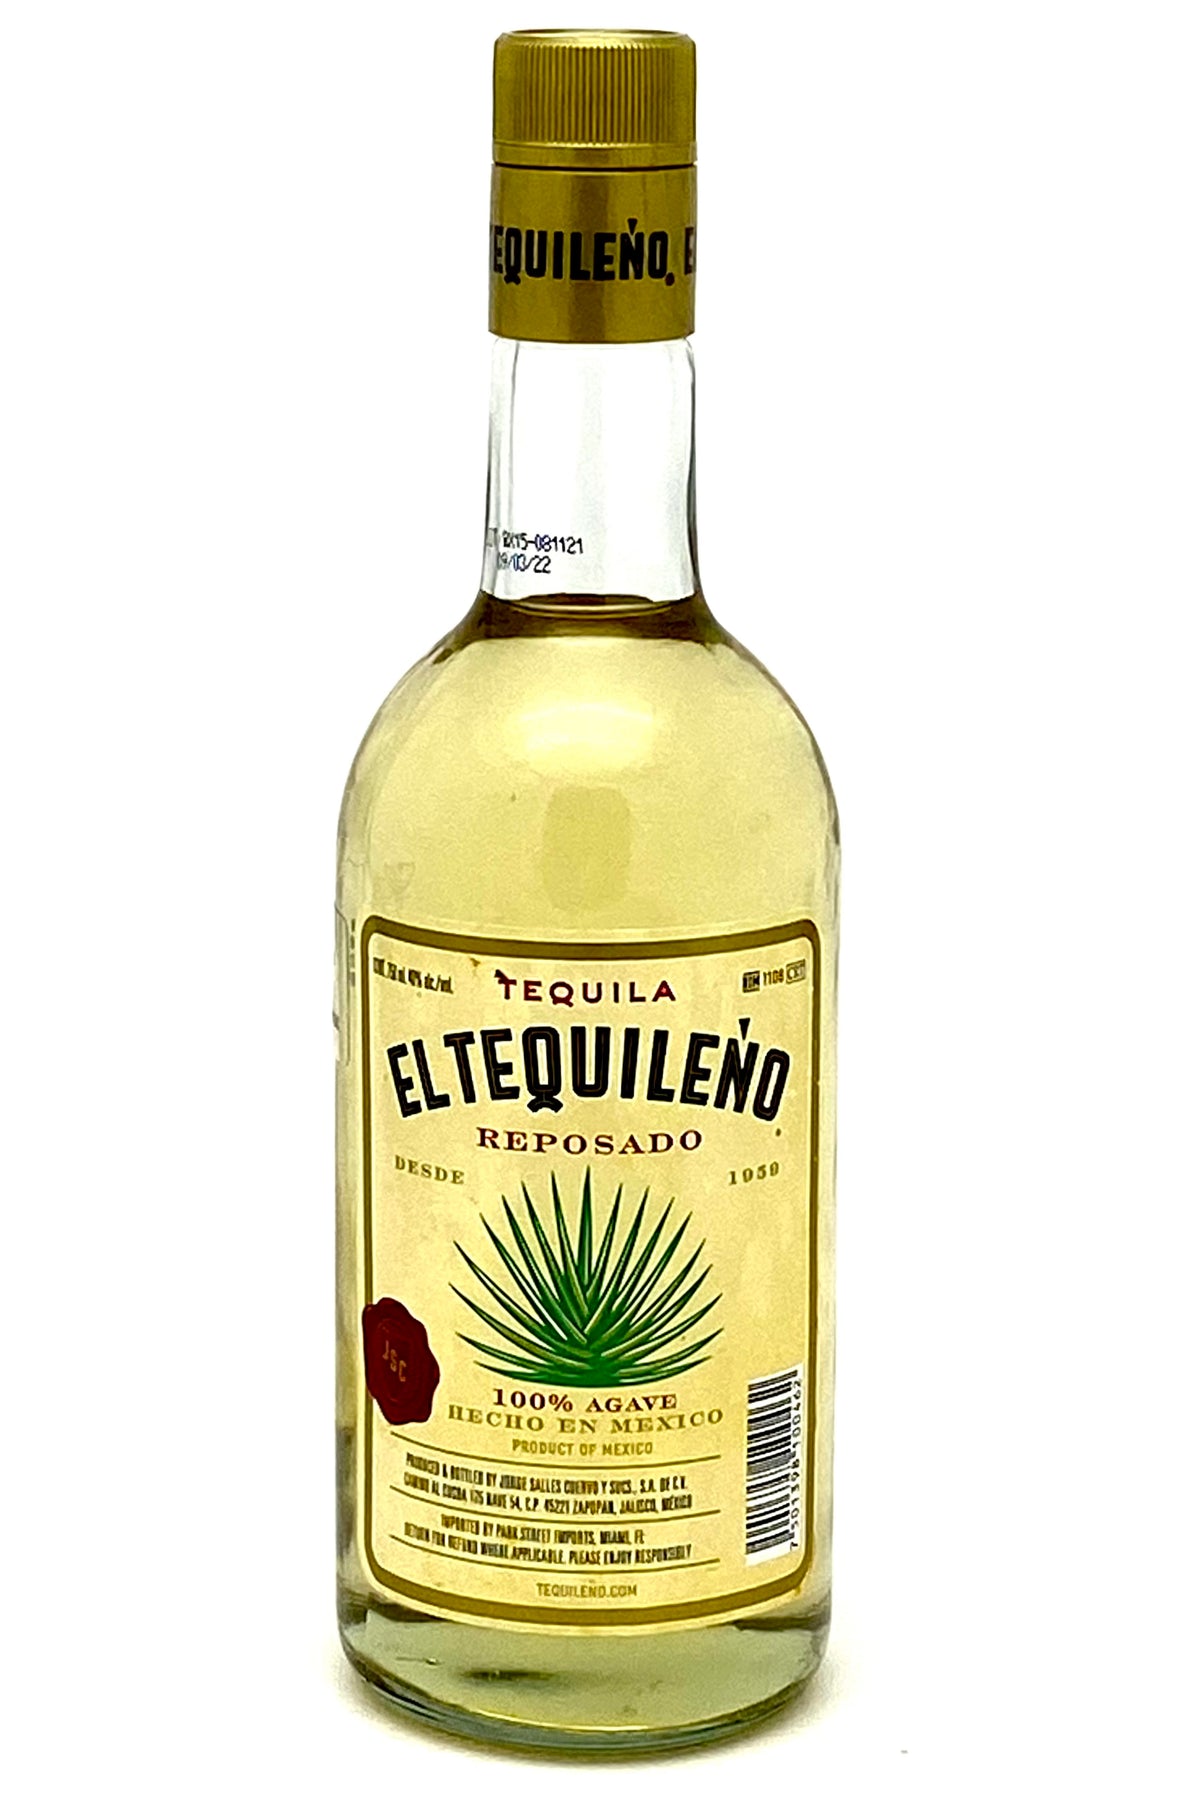 El Tequileno Reposado Tequila